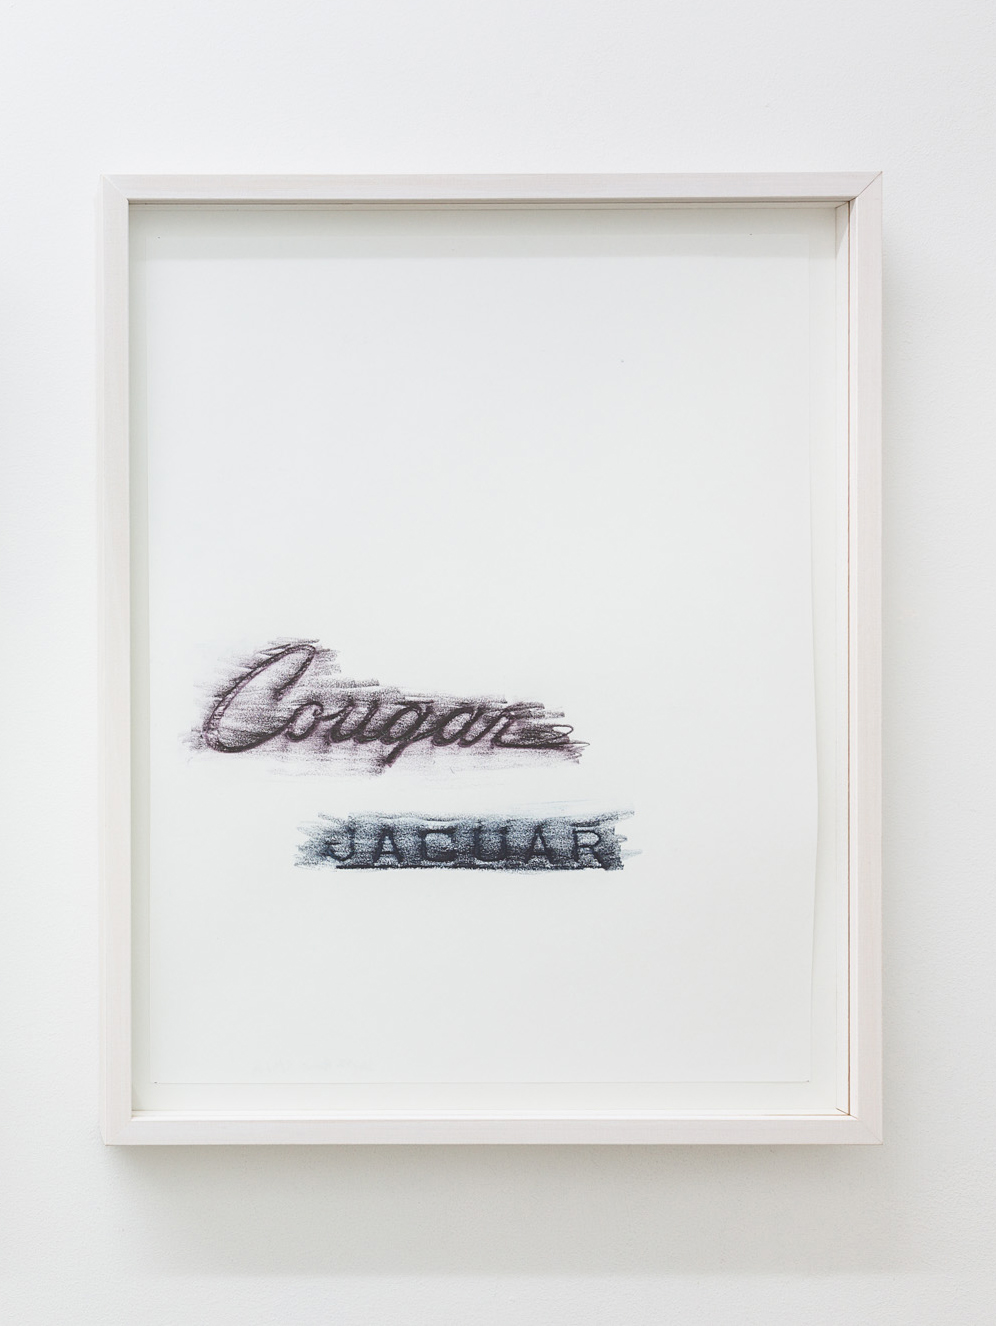 Elisabetta Benassi, Safari (Cougar, Jaguar), 2019, frottage sur papier, 37 x 29 cm (sans cadre), 43 x 34 cm (avec cadre) 